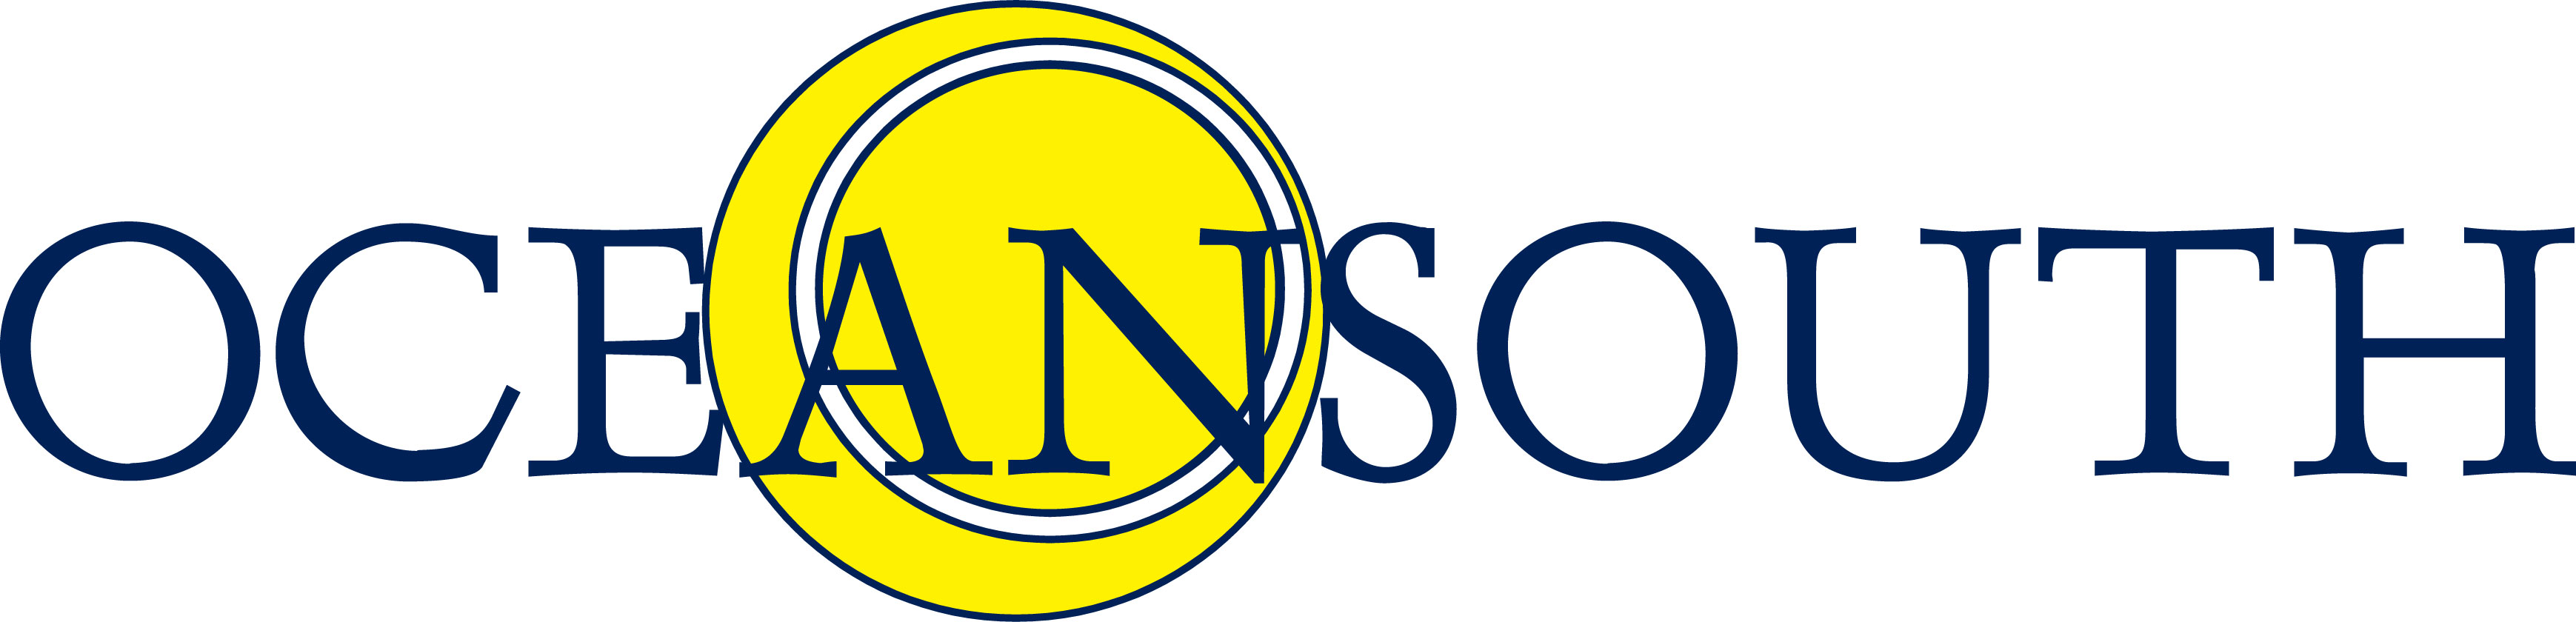 Ocean south logo